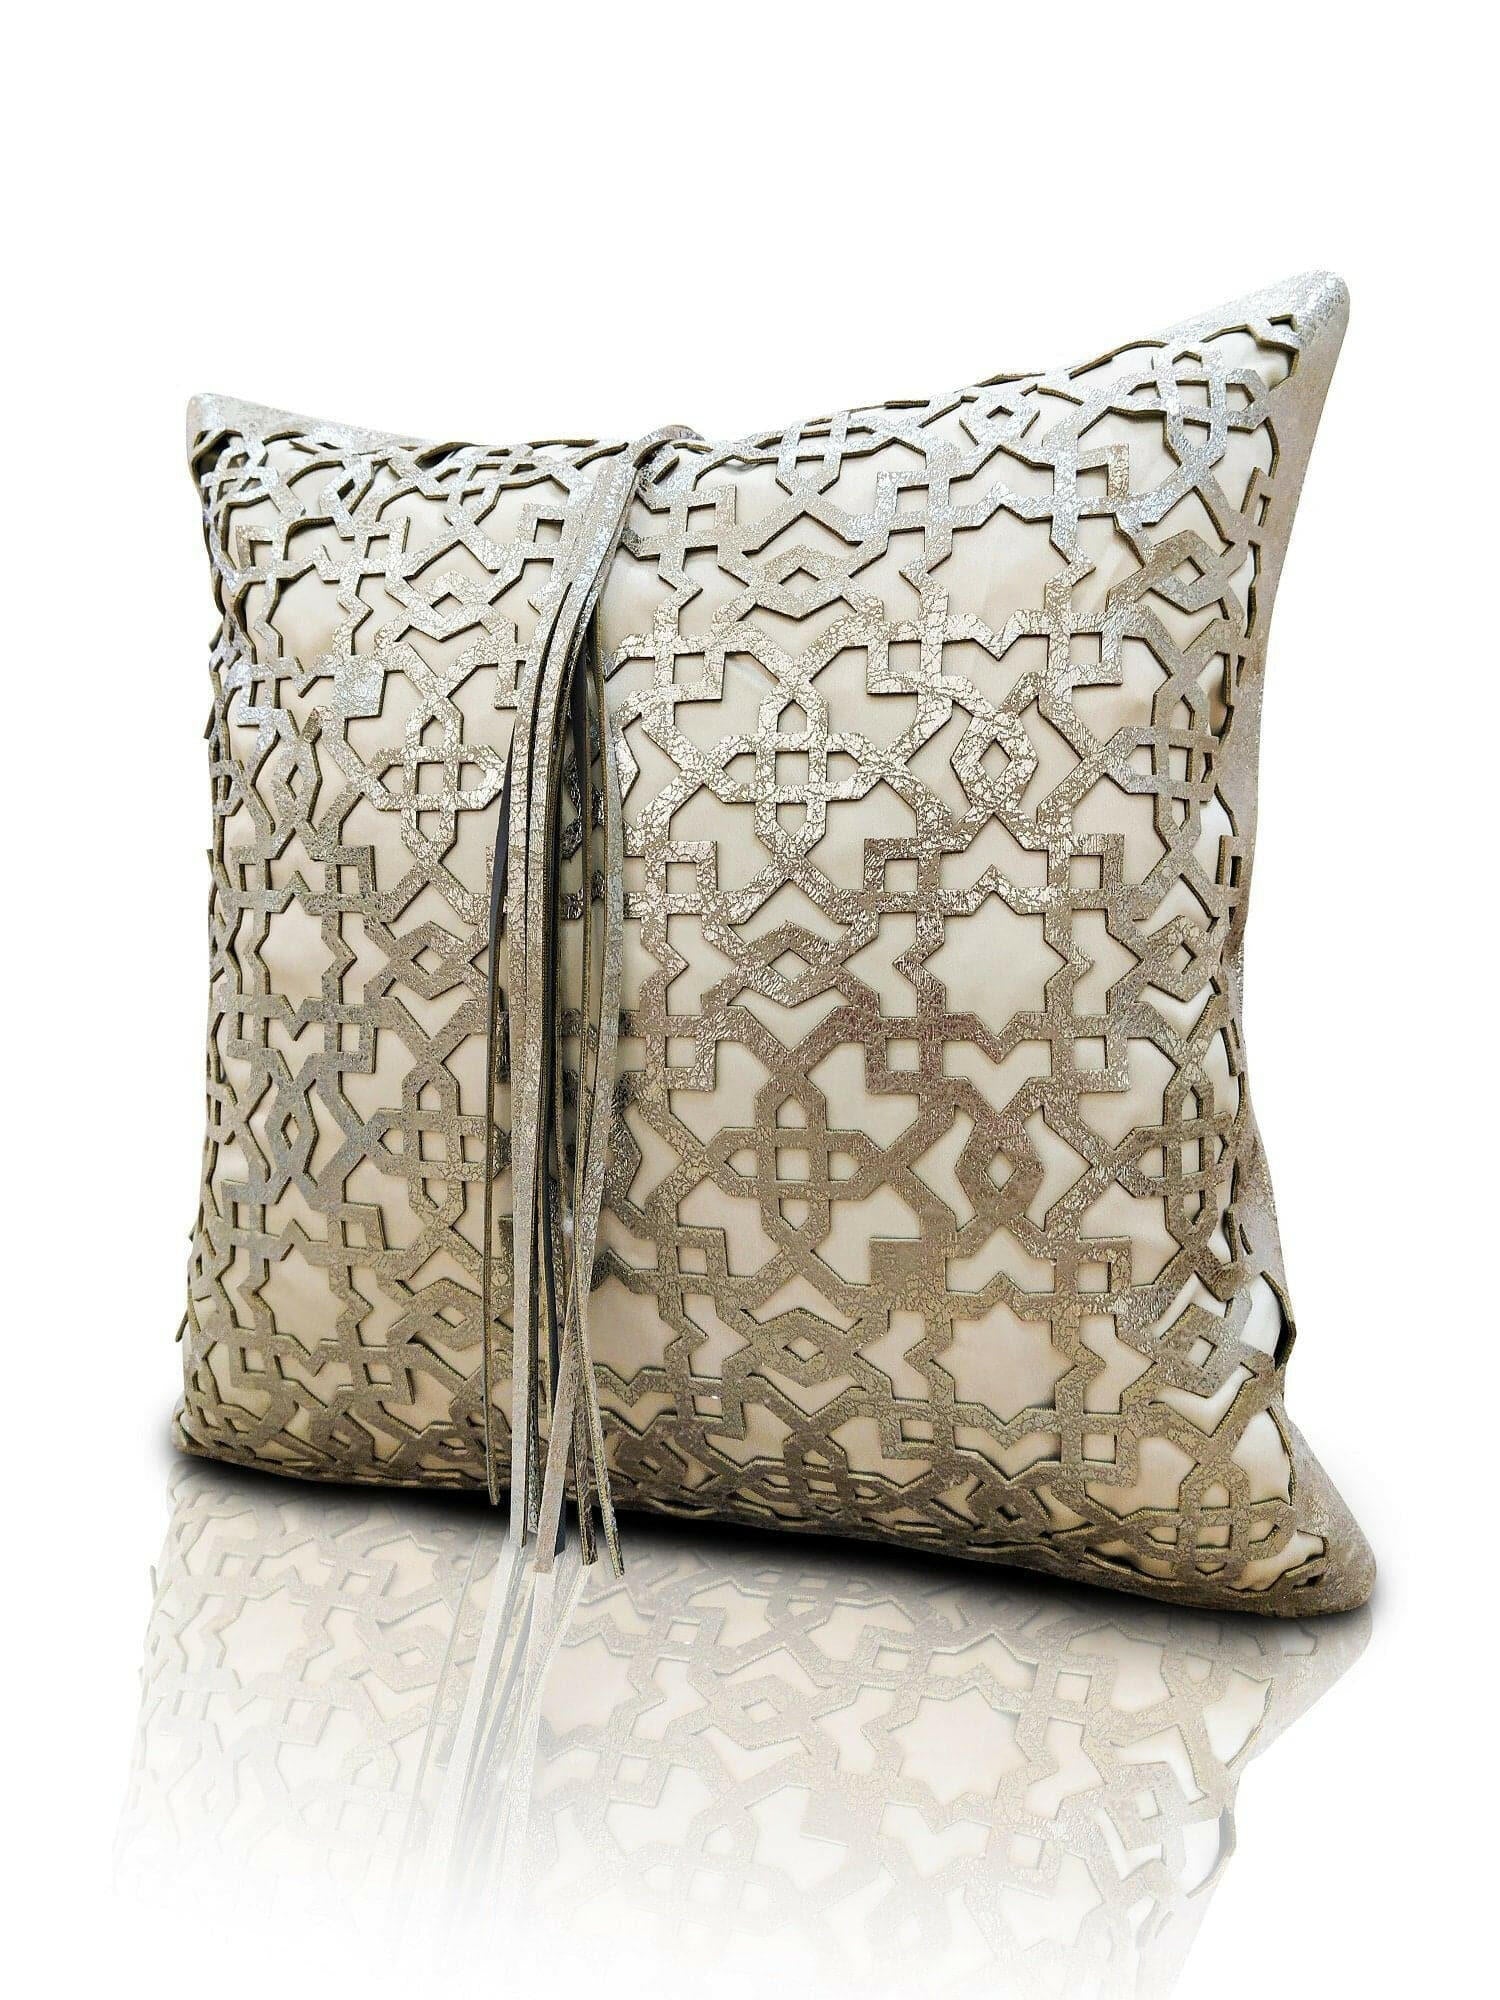 Ottoman Cushion Cover - Creative Home Designs Pillowcases, Turkish Throw Pillows & Shams, Grey Color Cut Out Geometric Pattern Sham,CC-CH-OTMN-Gre-1S1R,CC-CH-OTMN-Gre-2S,CC-CH-OTMN-Gre-2R,CC-CH-OTMN-Gre-2S1R